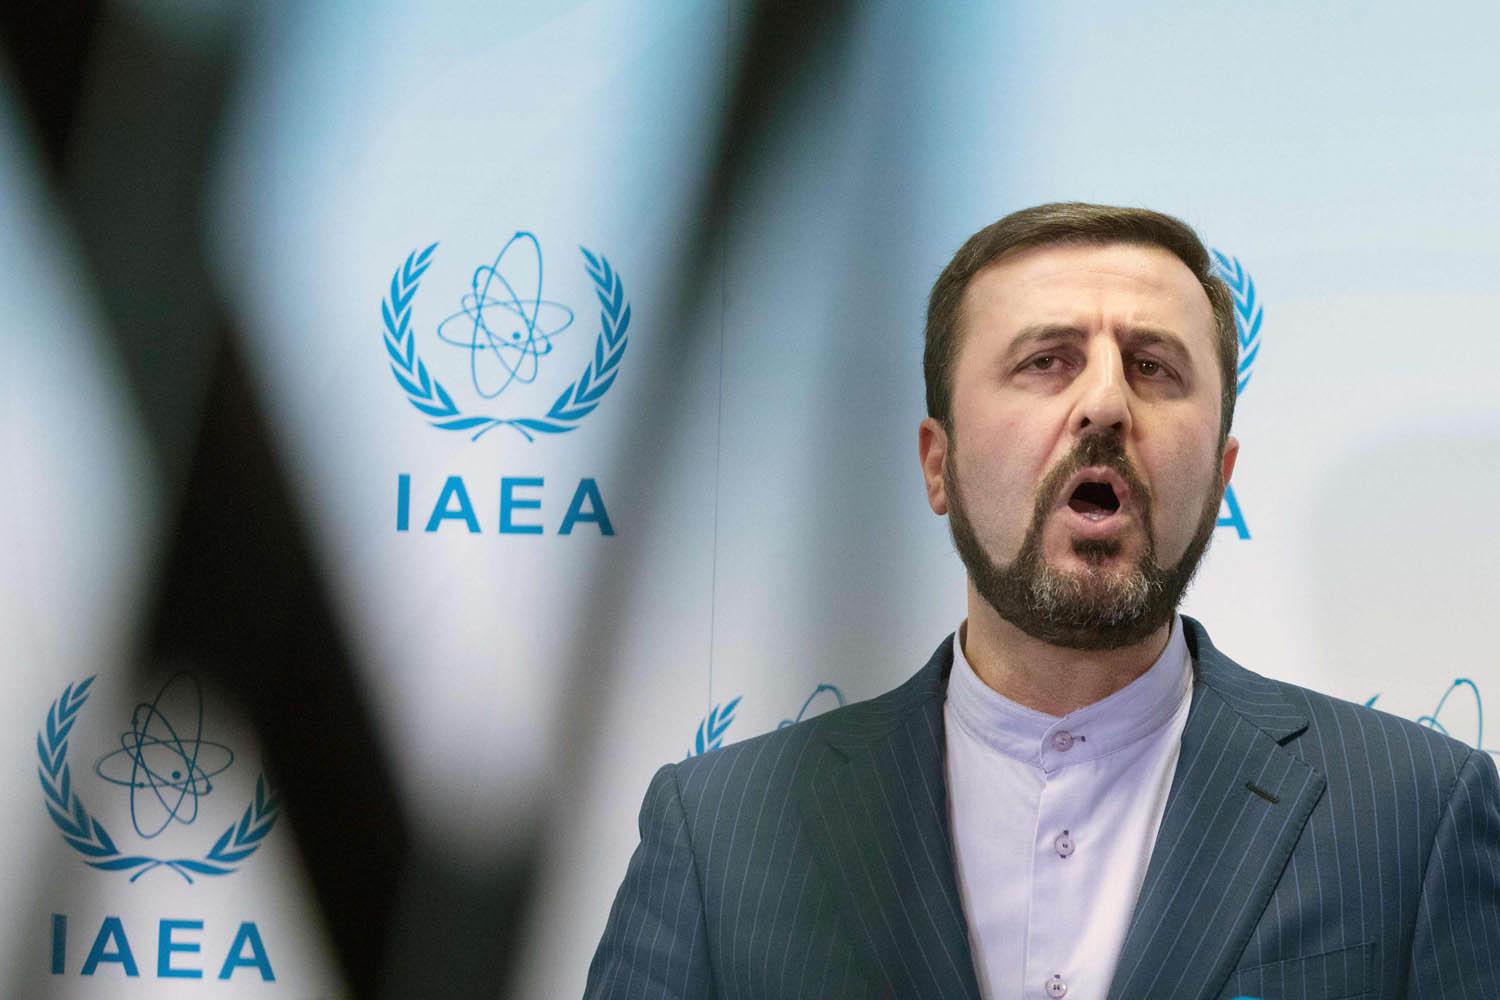 مندوب إيران الدائم في الامم المتحدة كاظم غريب آبادي يتحدث للصحفيين عن المشروع النووي الإيراني